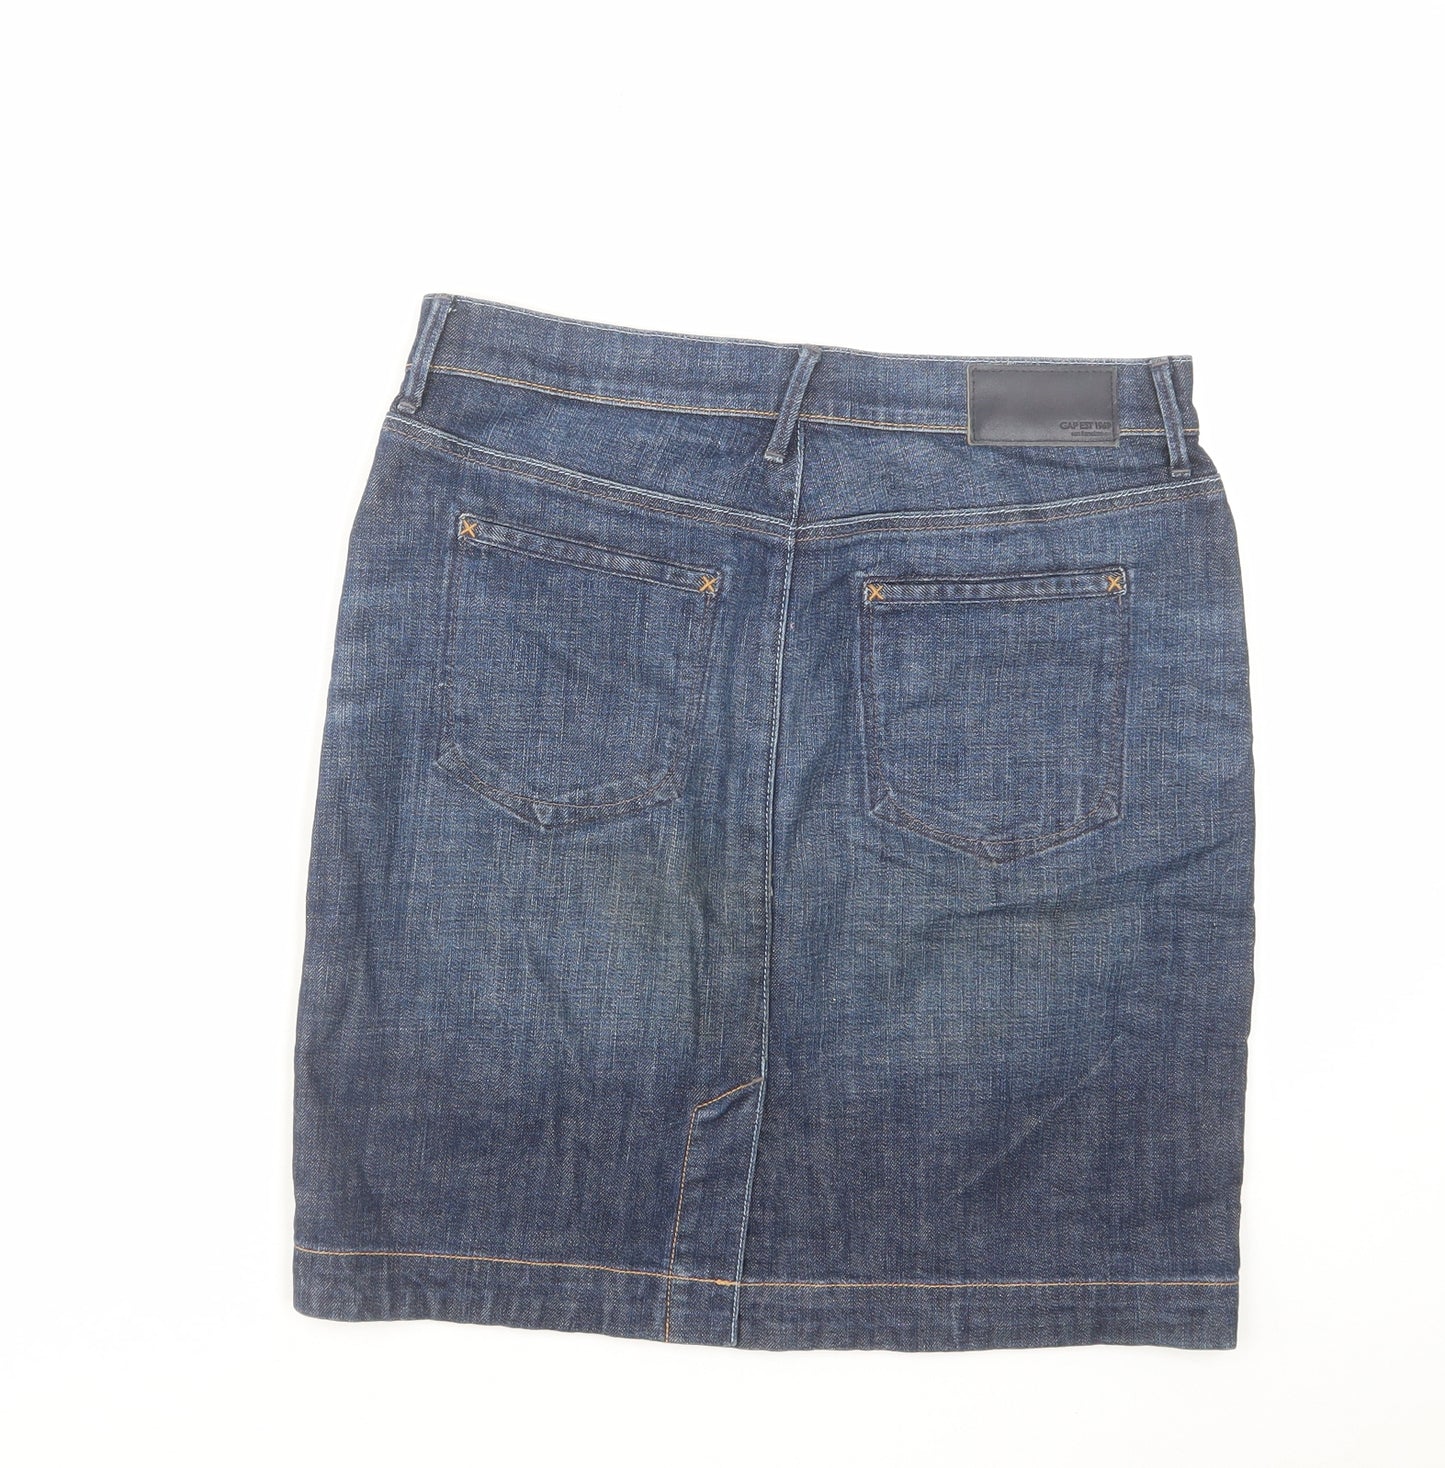 Gap Womens Blue Cotton A-Line Skirt Size 10 Zip